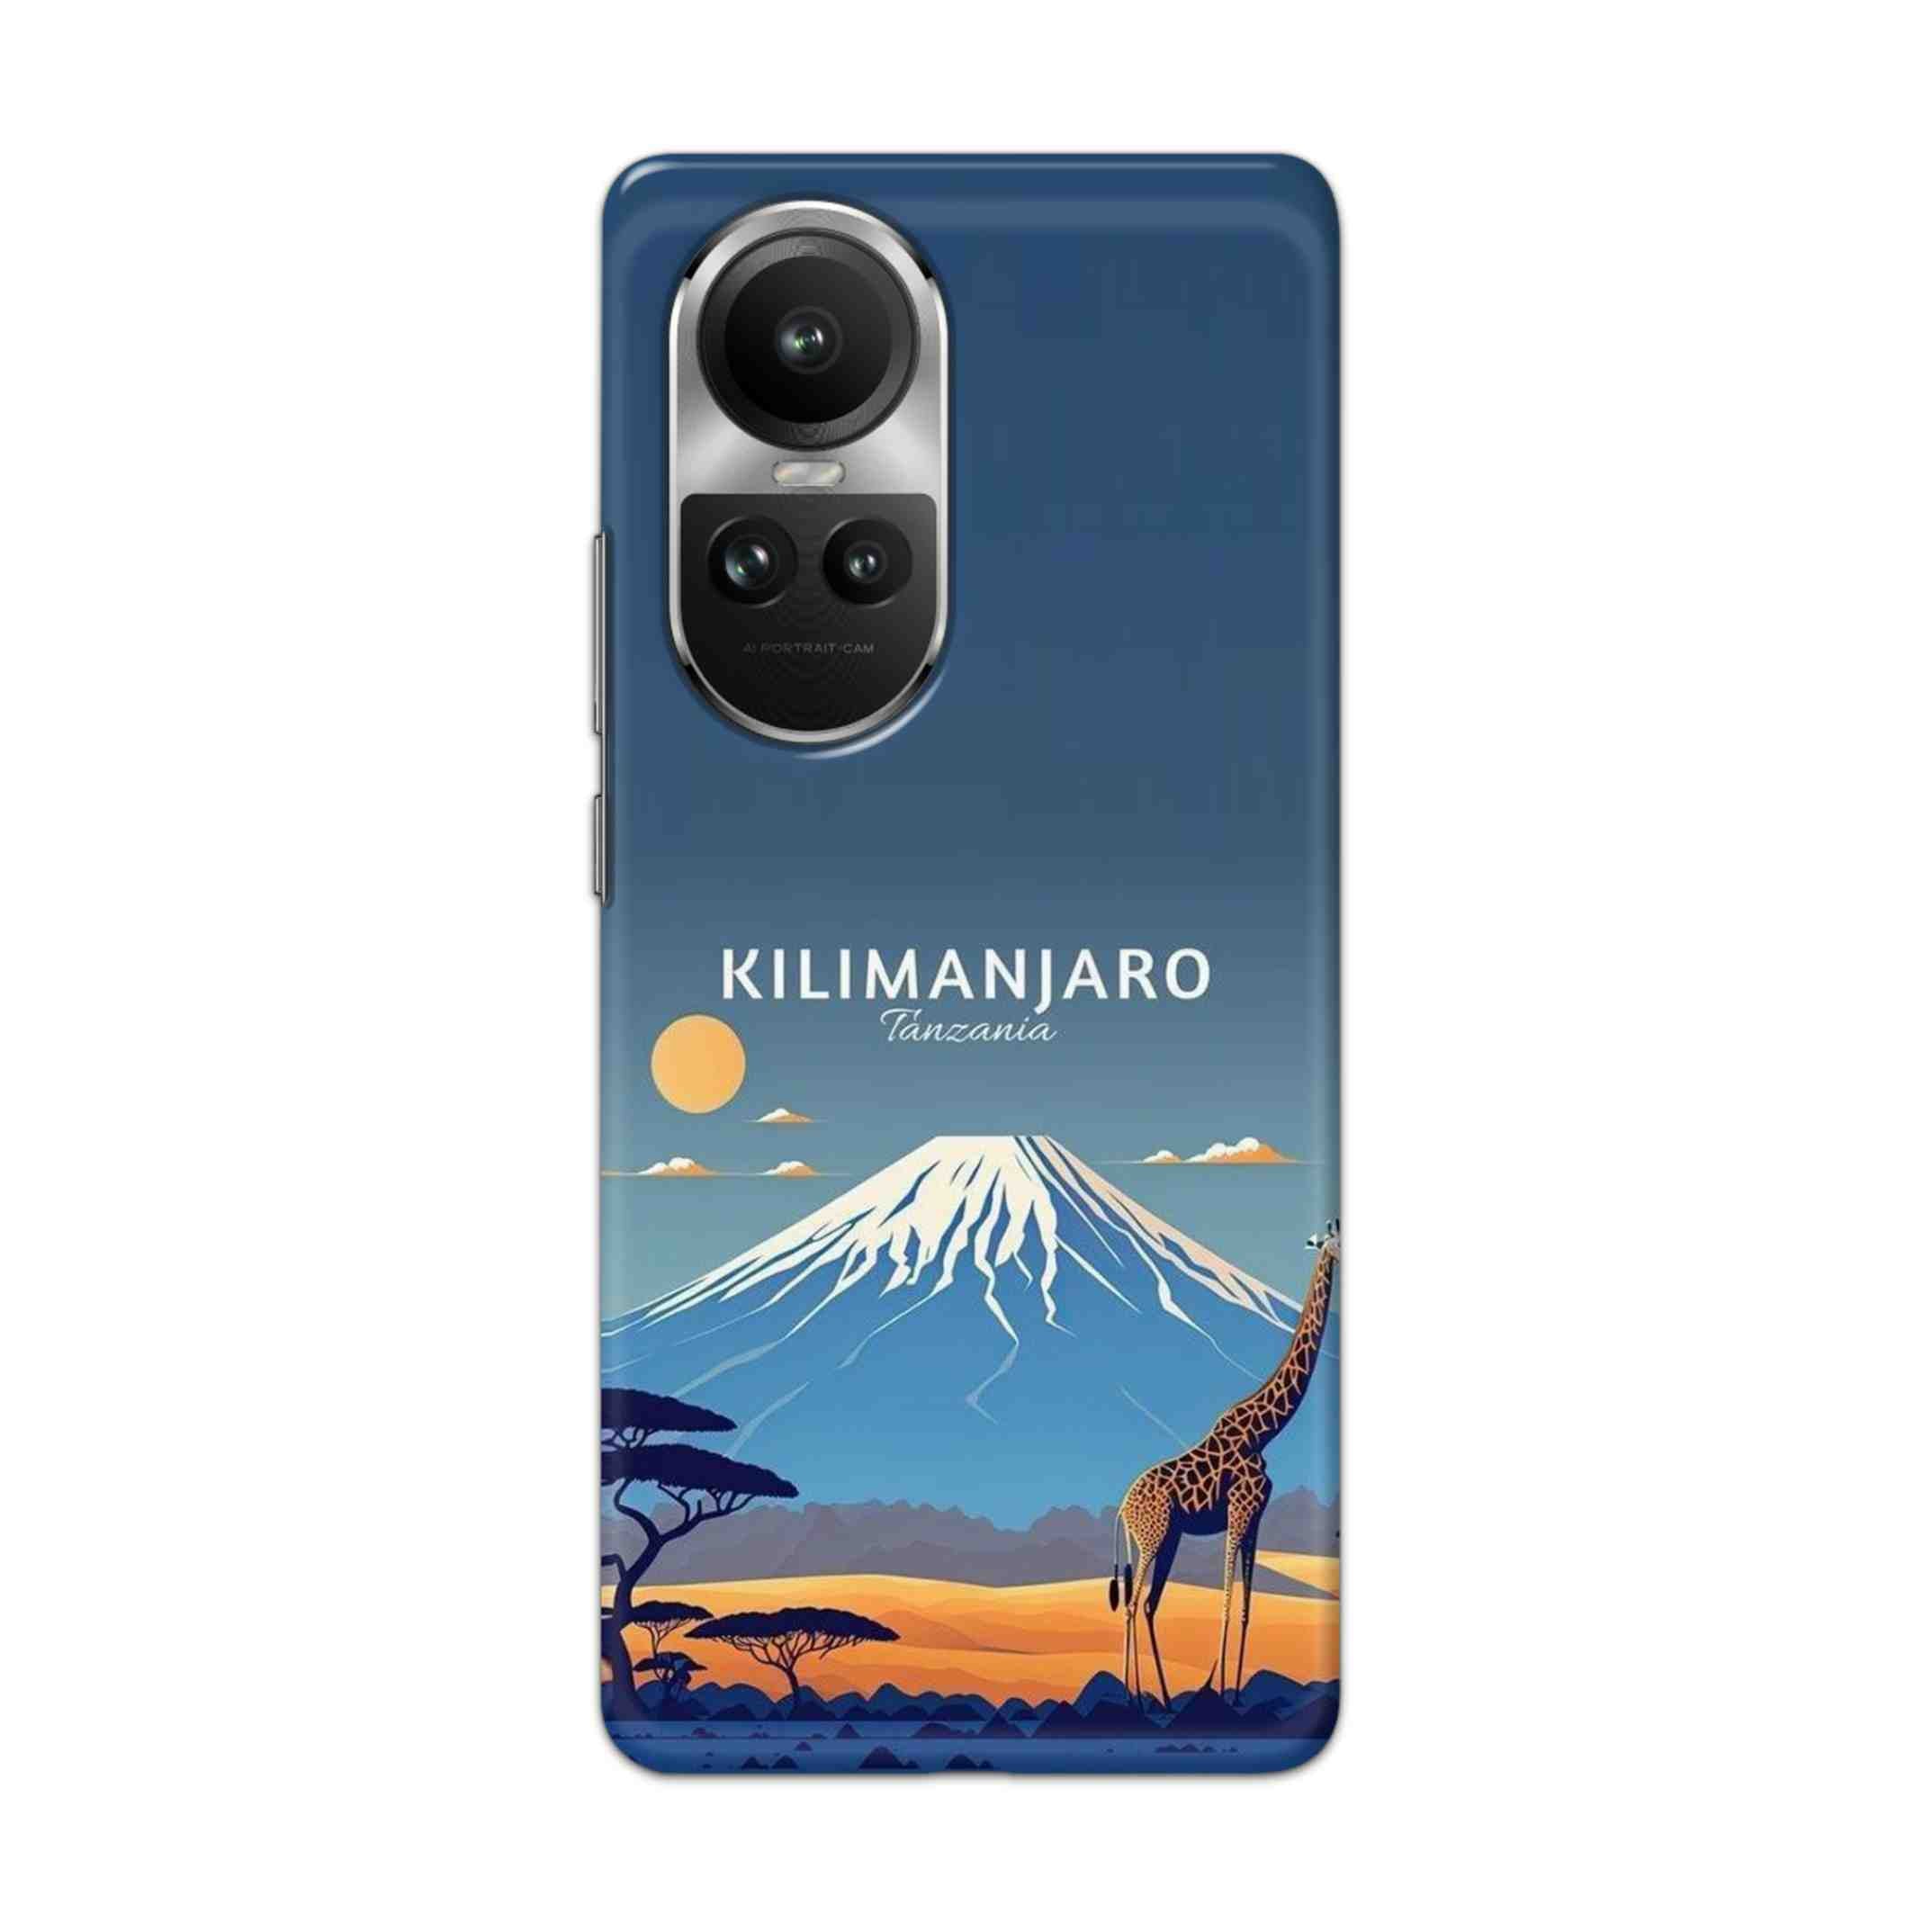 Buy Kilimanjaro Hard Back Mobile Phone Case/Cover For Oppo Reno 10 5G Online